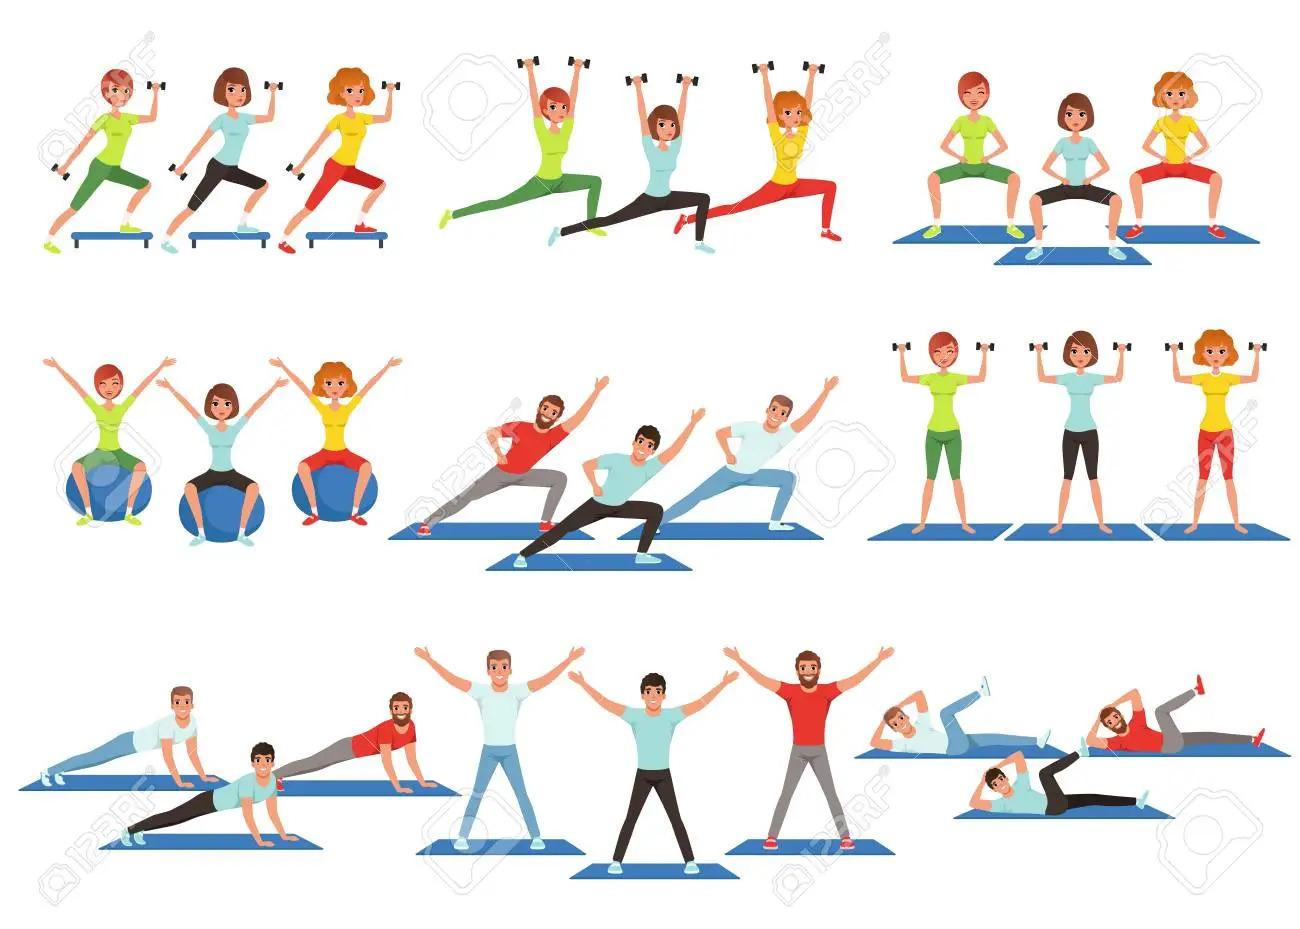 disegni stilizzati di persone che eseguono attività fisica (piegamenti, sollevamento pesi, etc.)